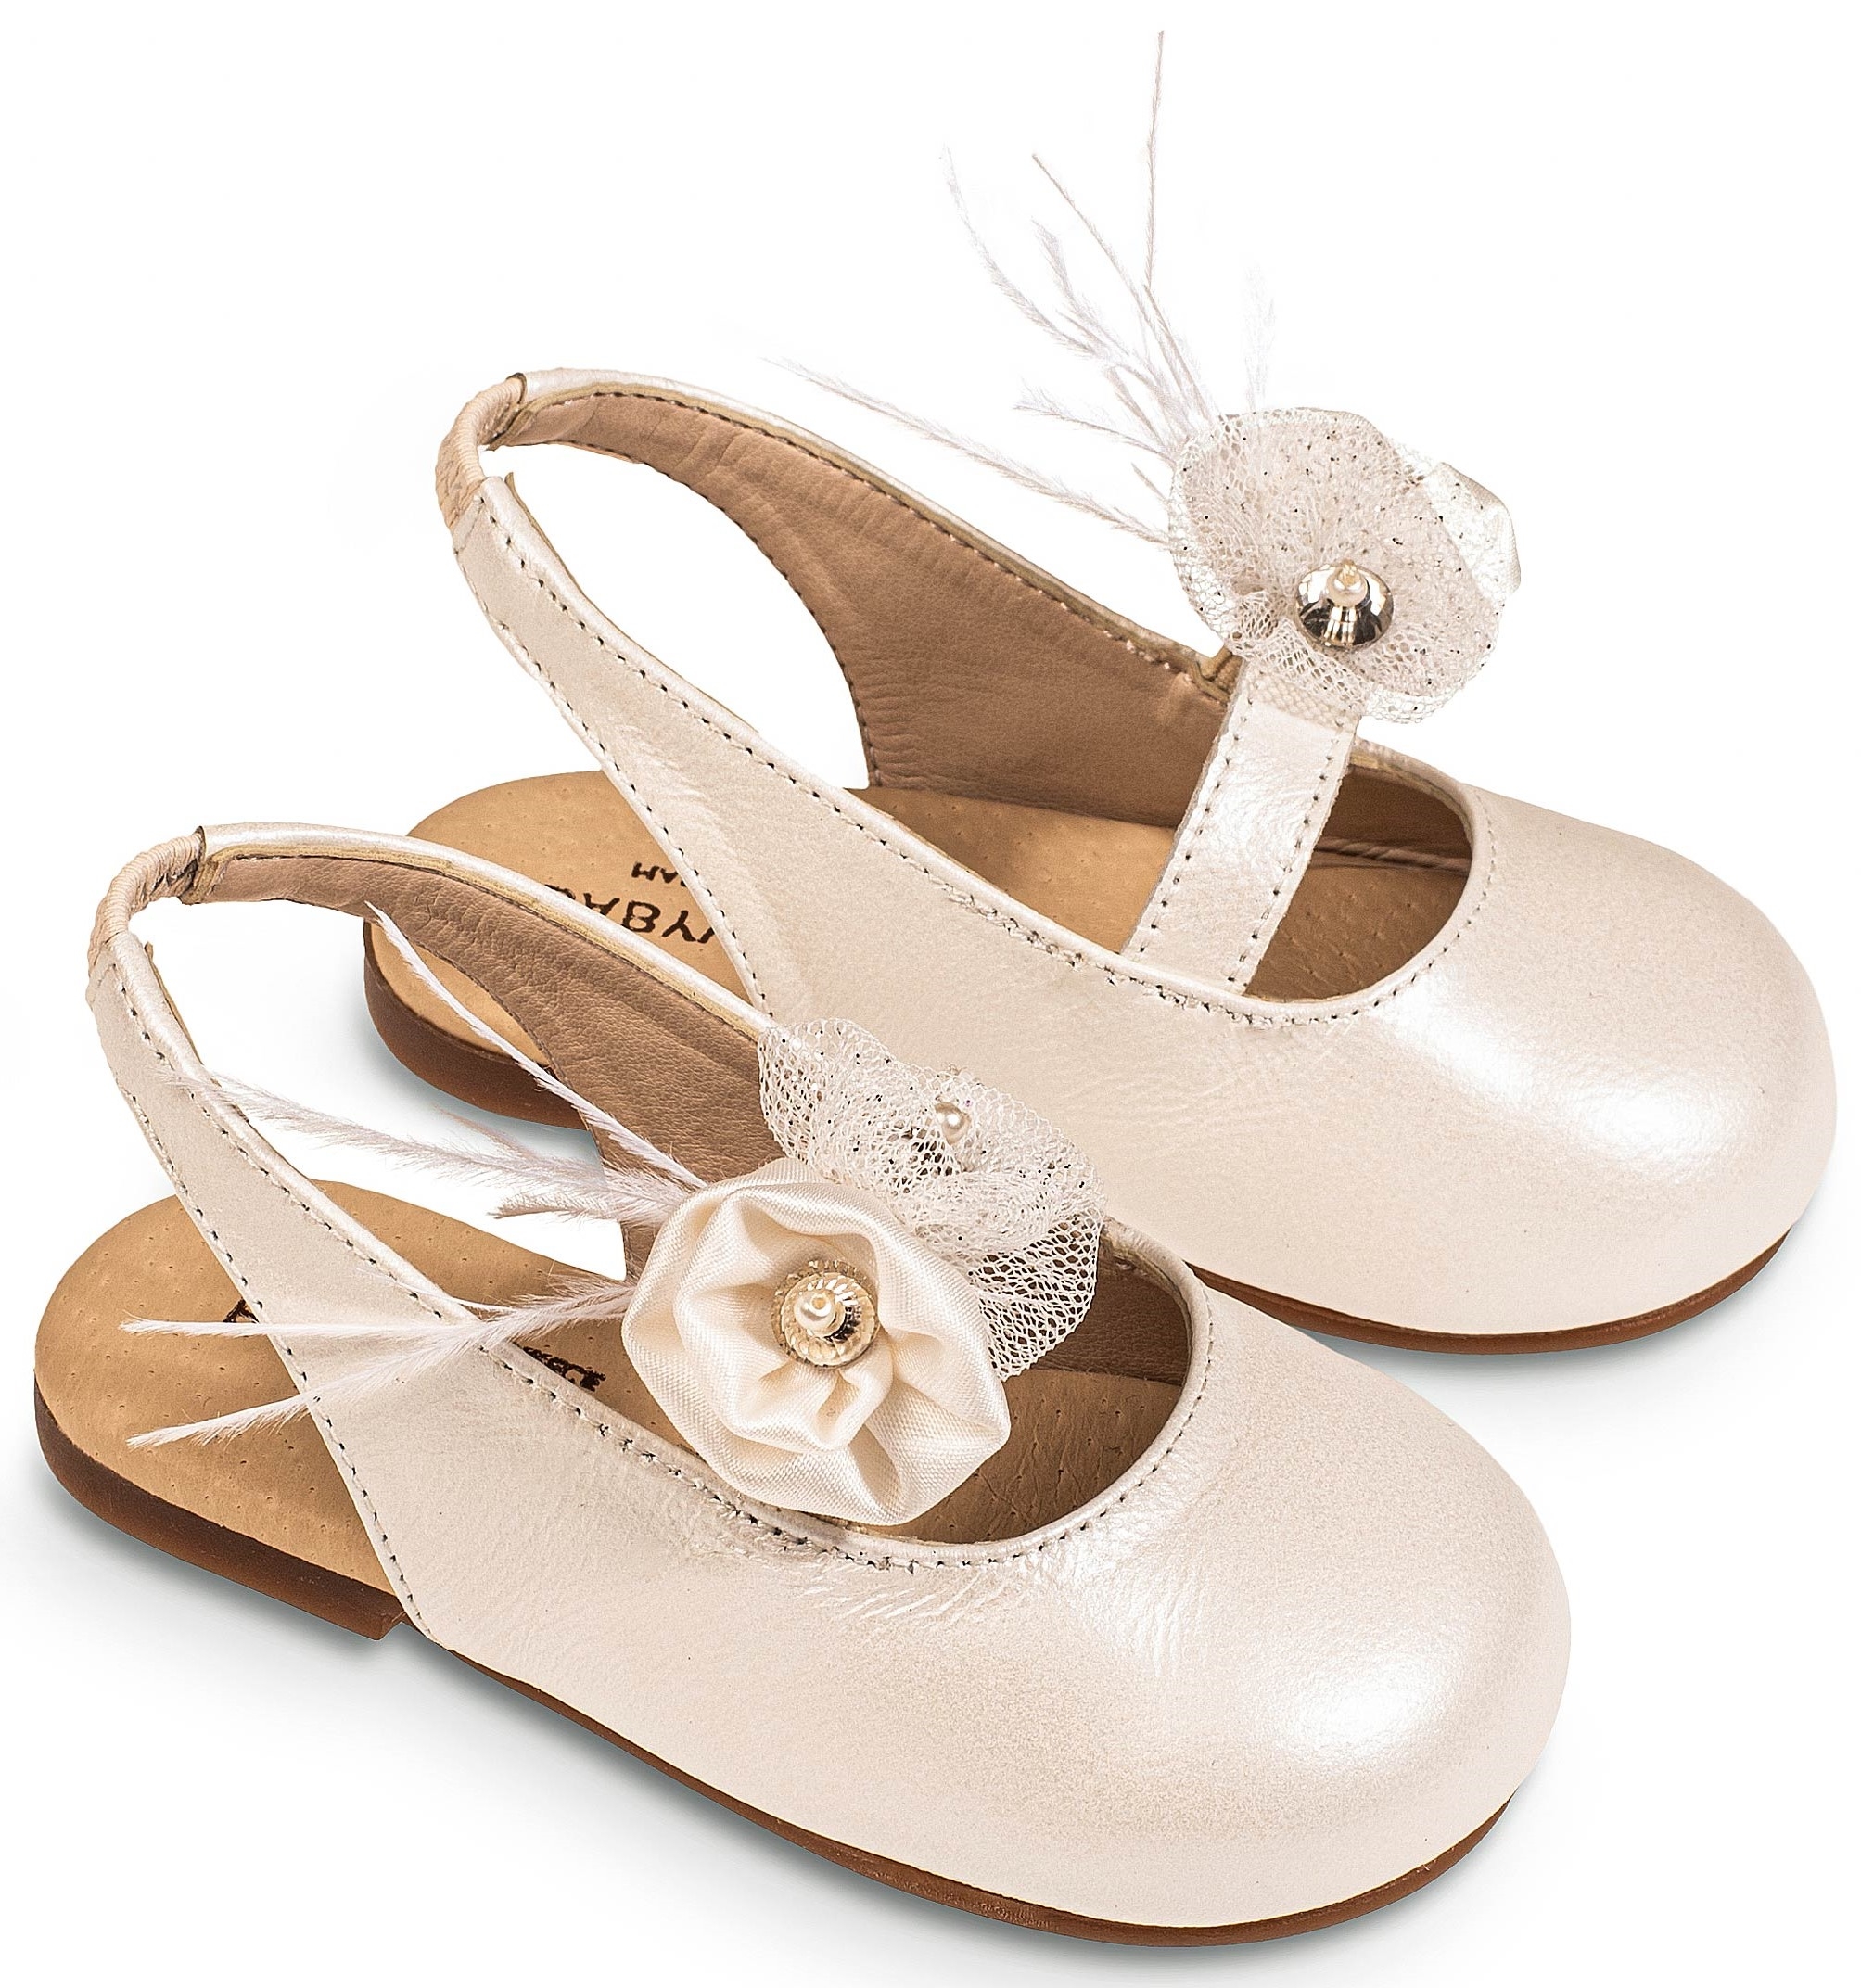 Σαμπό Ivory - Βαπτιστικά παπούτσια για κορίτσι